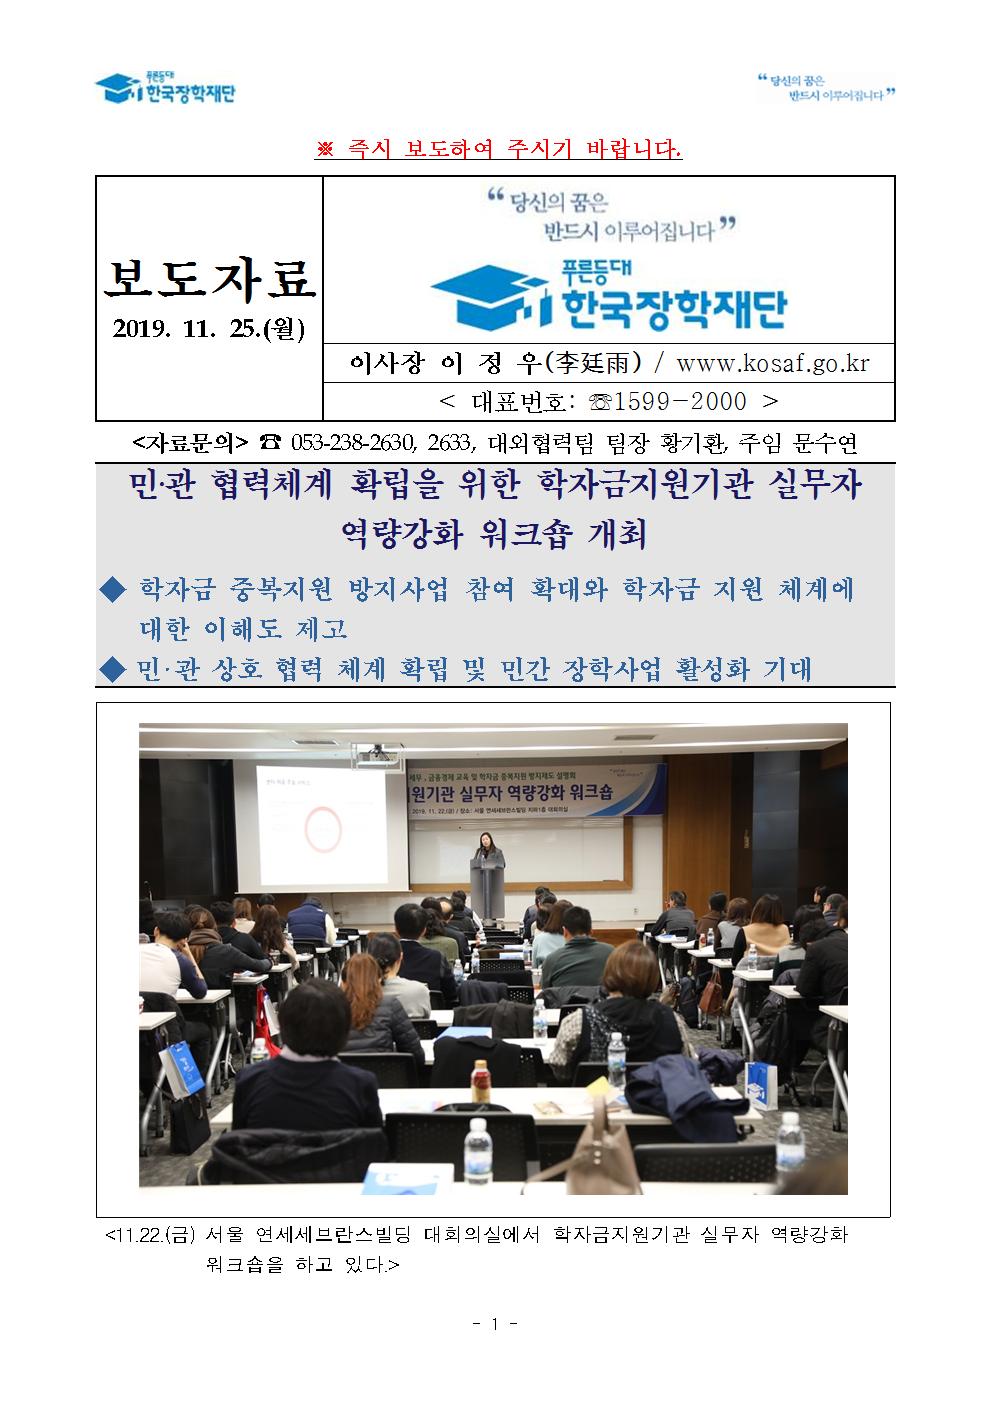 11-25(월)[보도자료] 민관 협력체계 확립을 위한 학자금지원기관 실무자 역량강화 워크숍 개최001.jpg